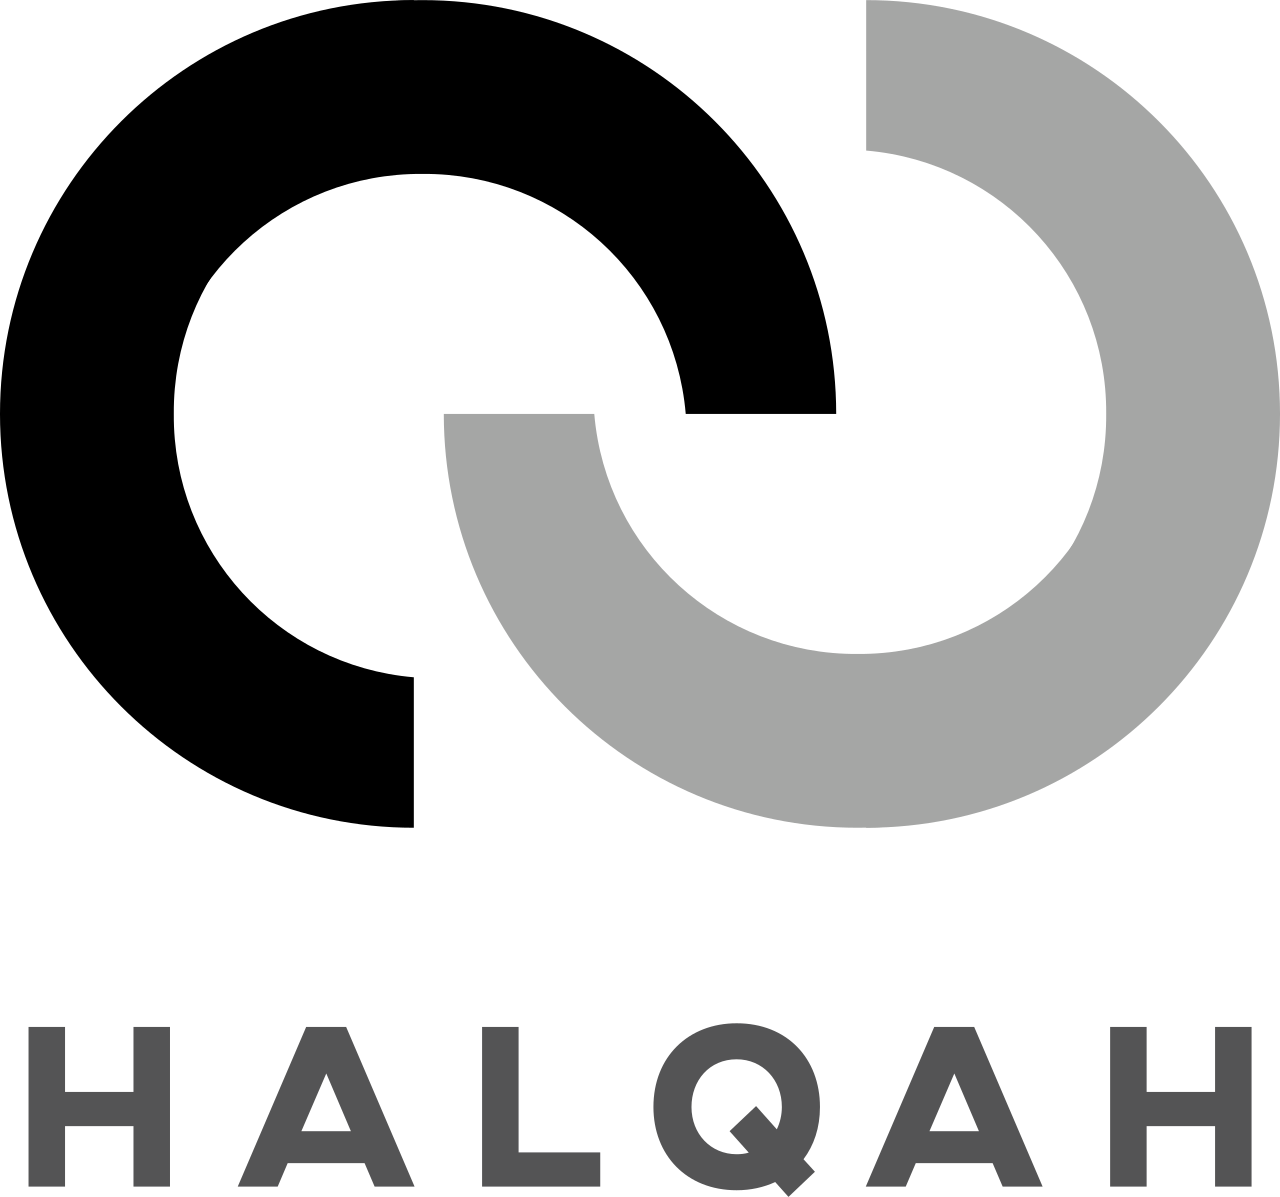 Halqah Marketing's logo